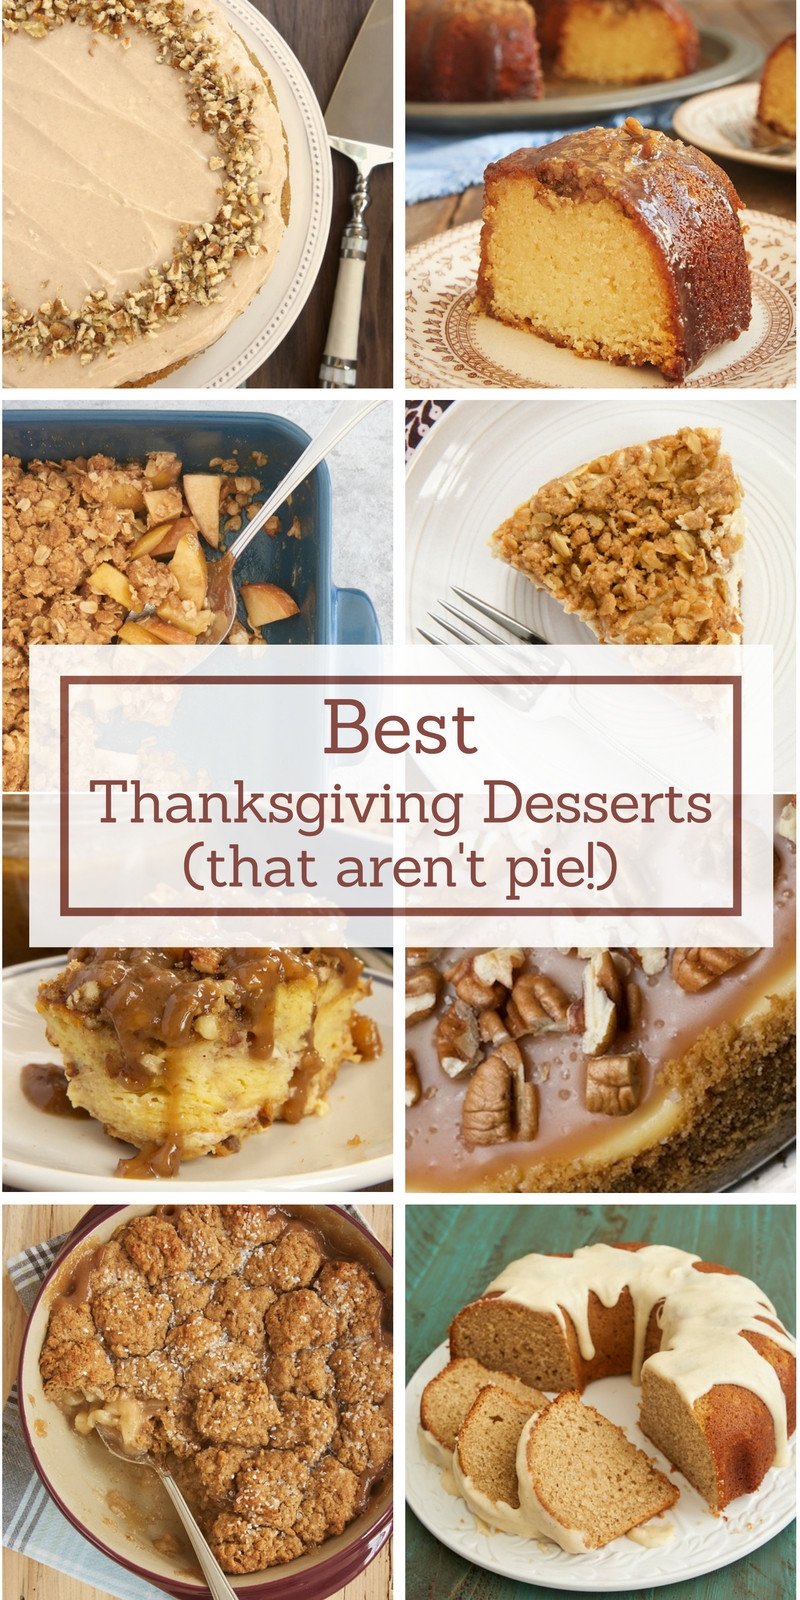 Best Thanksgiving Pies
 Best Thanksgiving Desserts Bake or Break